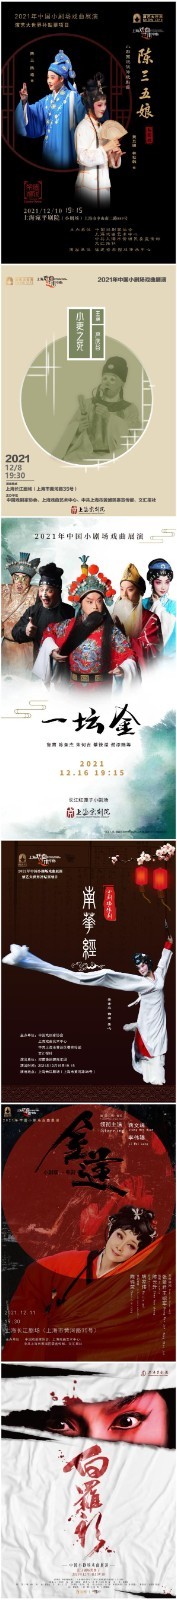 小剧场戏曲展演在沪开幕 十个剧种作品将登场